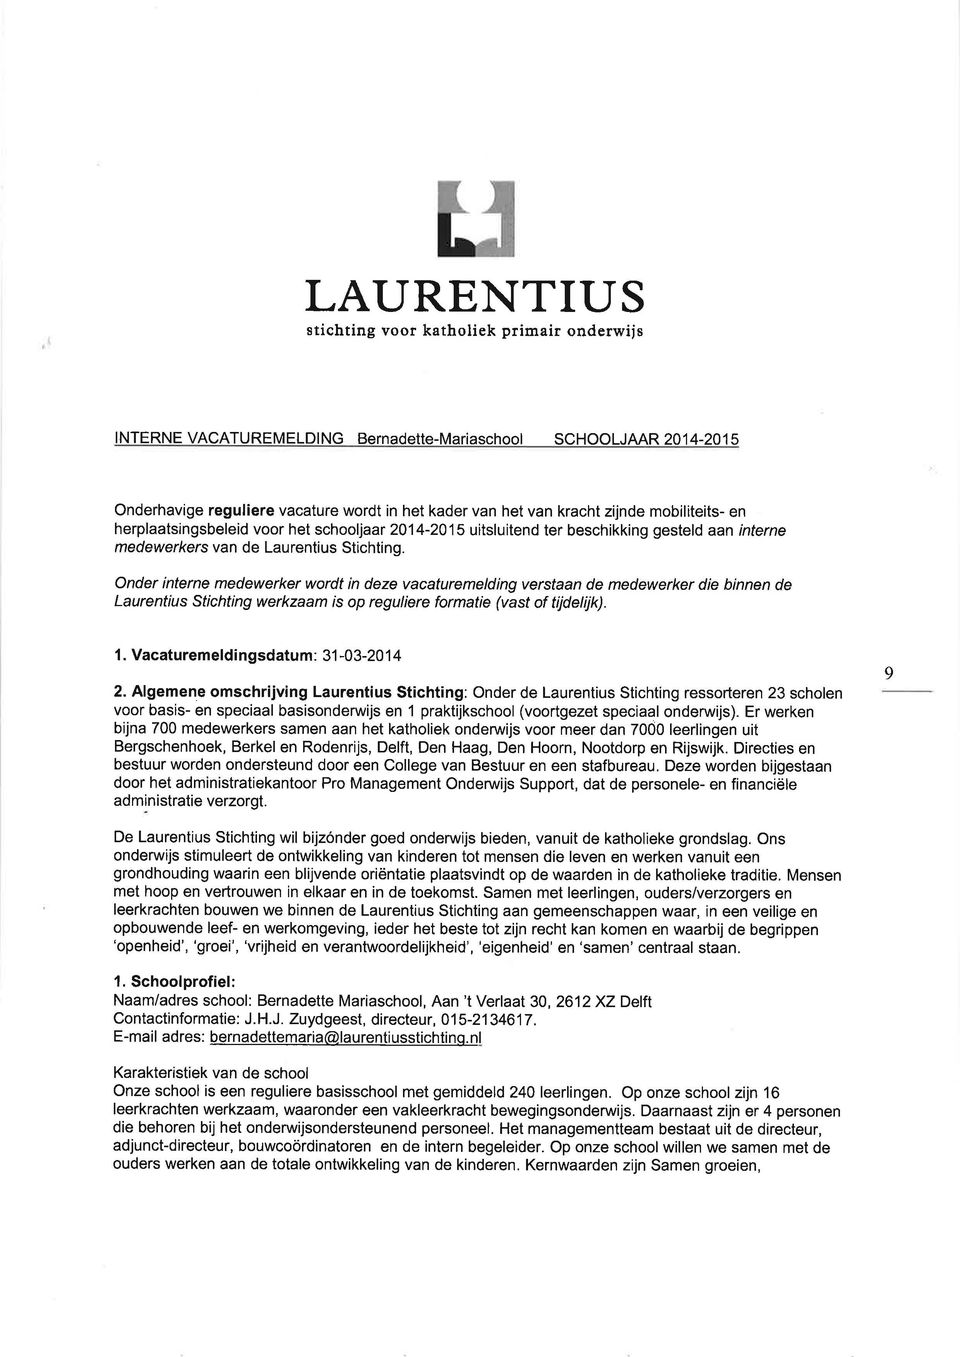 Onder interne medewerker wordt in deze vacaturemelding verstaan de medewerker die binnen de Laurentius Stichting werkzaam is op reguliere formatie (vast of tijdelijk). 1.